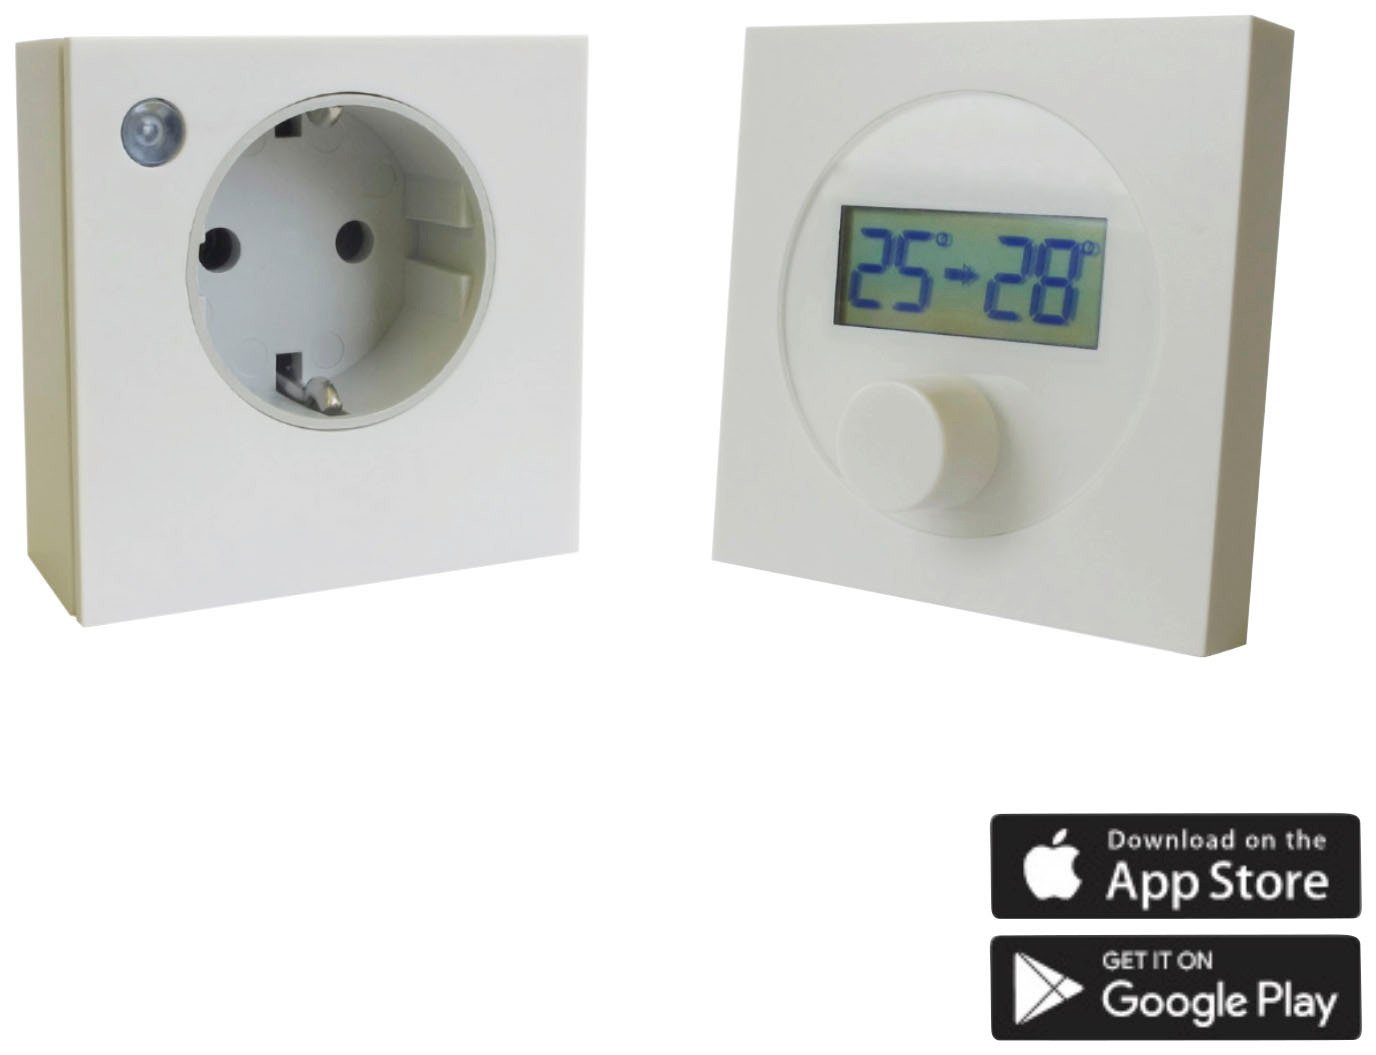 Thermostat m. Steckdose + Fühler + Zeitschaltuhr (bis 3600 W)